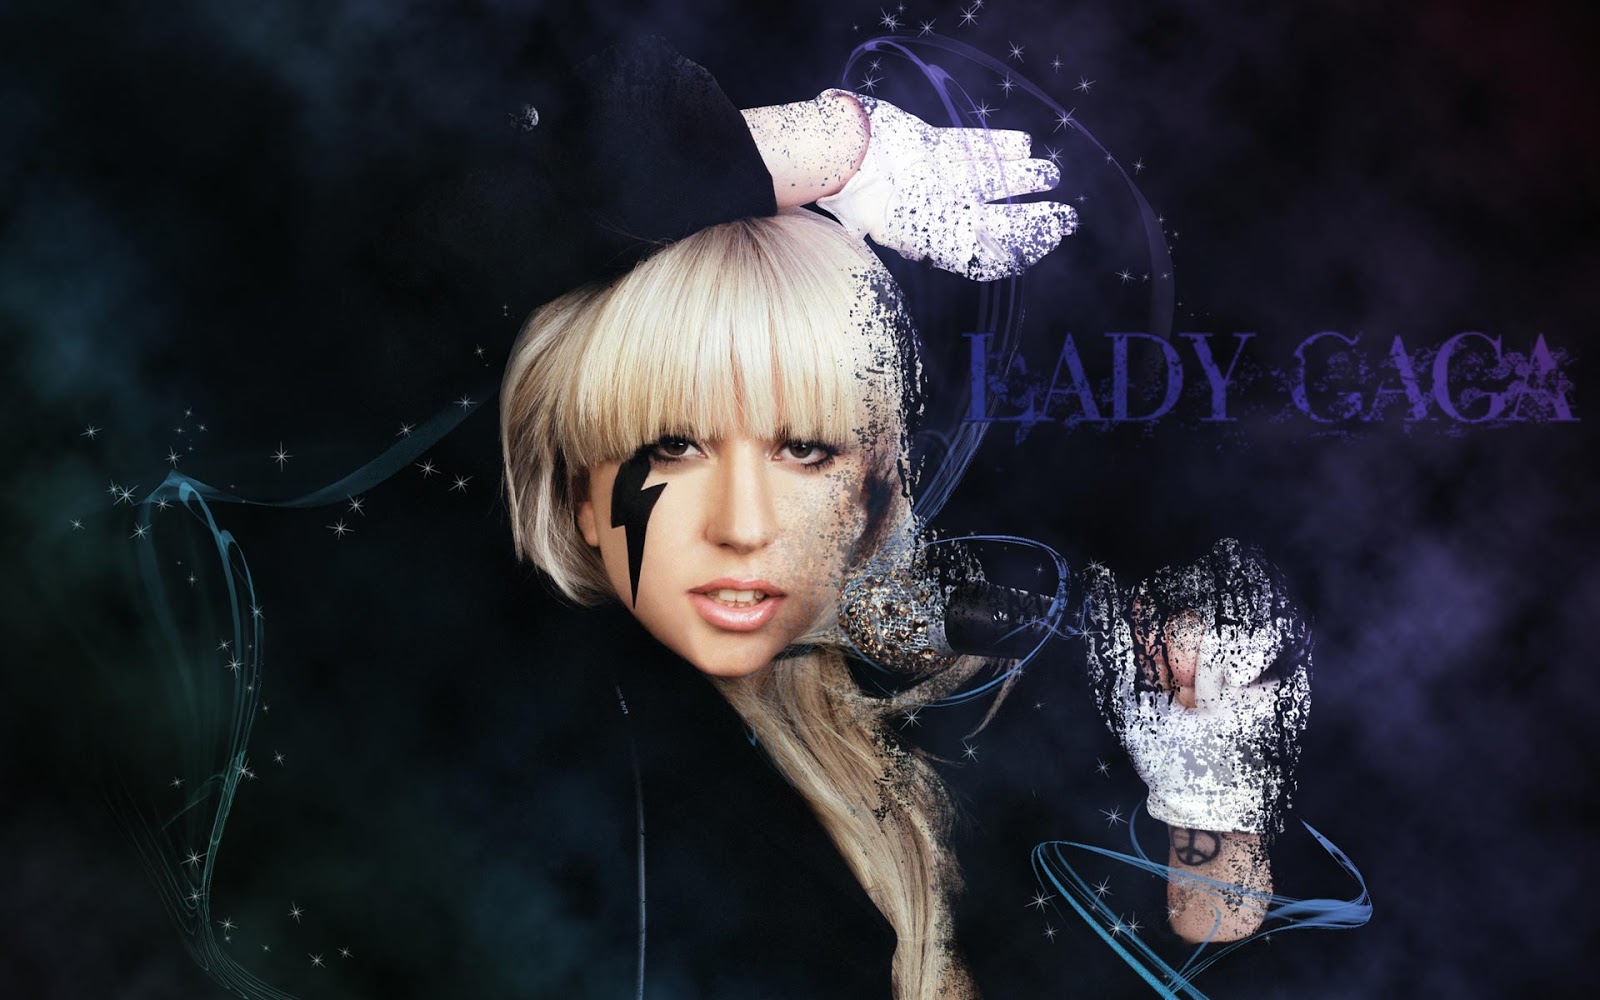 http://2.bp.blogspot.com/-jbEZulH8ato/UQKY_tDyYeI/AAAAAAAAFFw/J3EQraJYc_4/s1600/Lady-Gaga-JustDance-1920x1200-Wallpaper.jpg